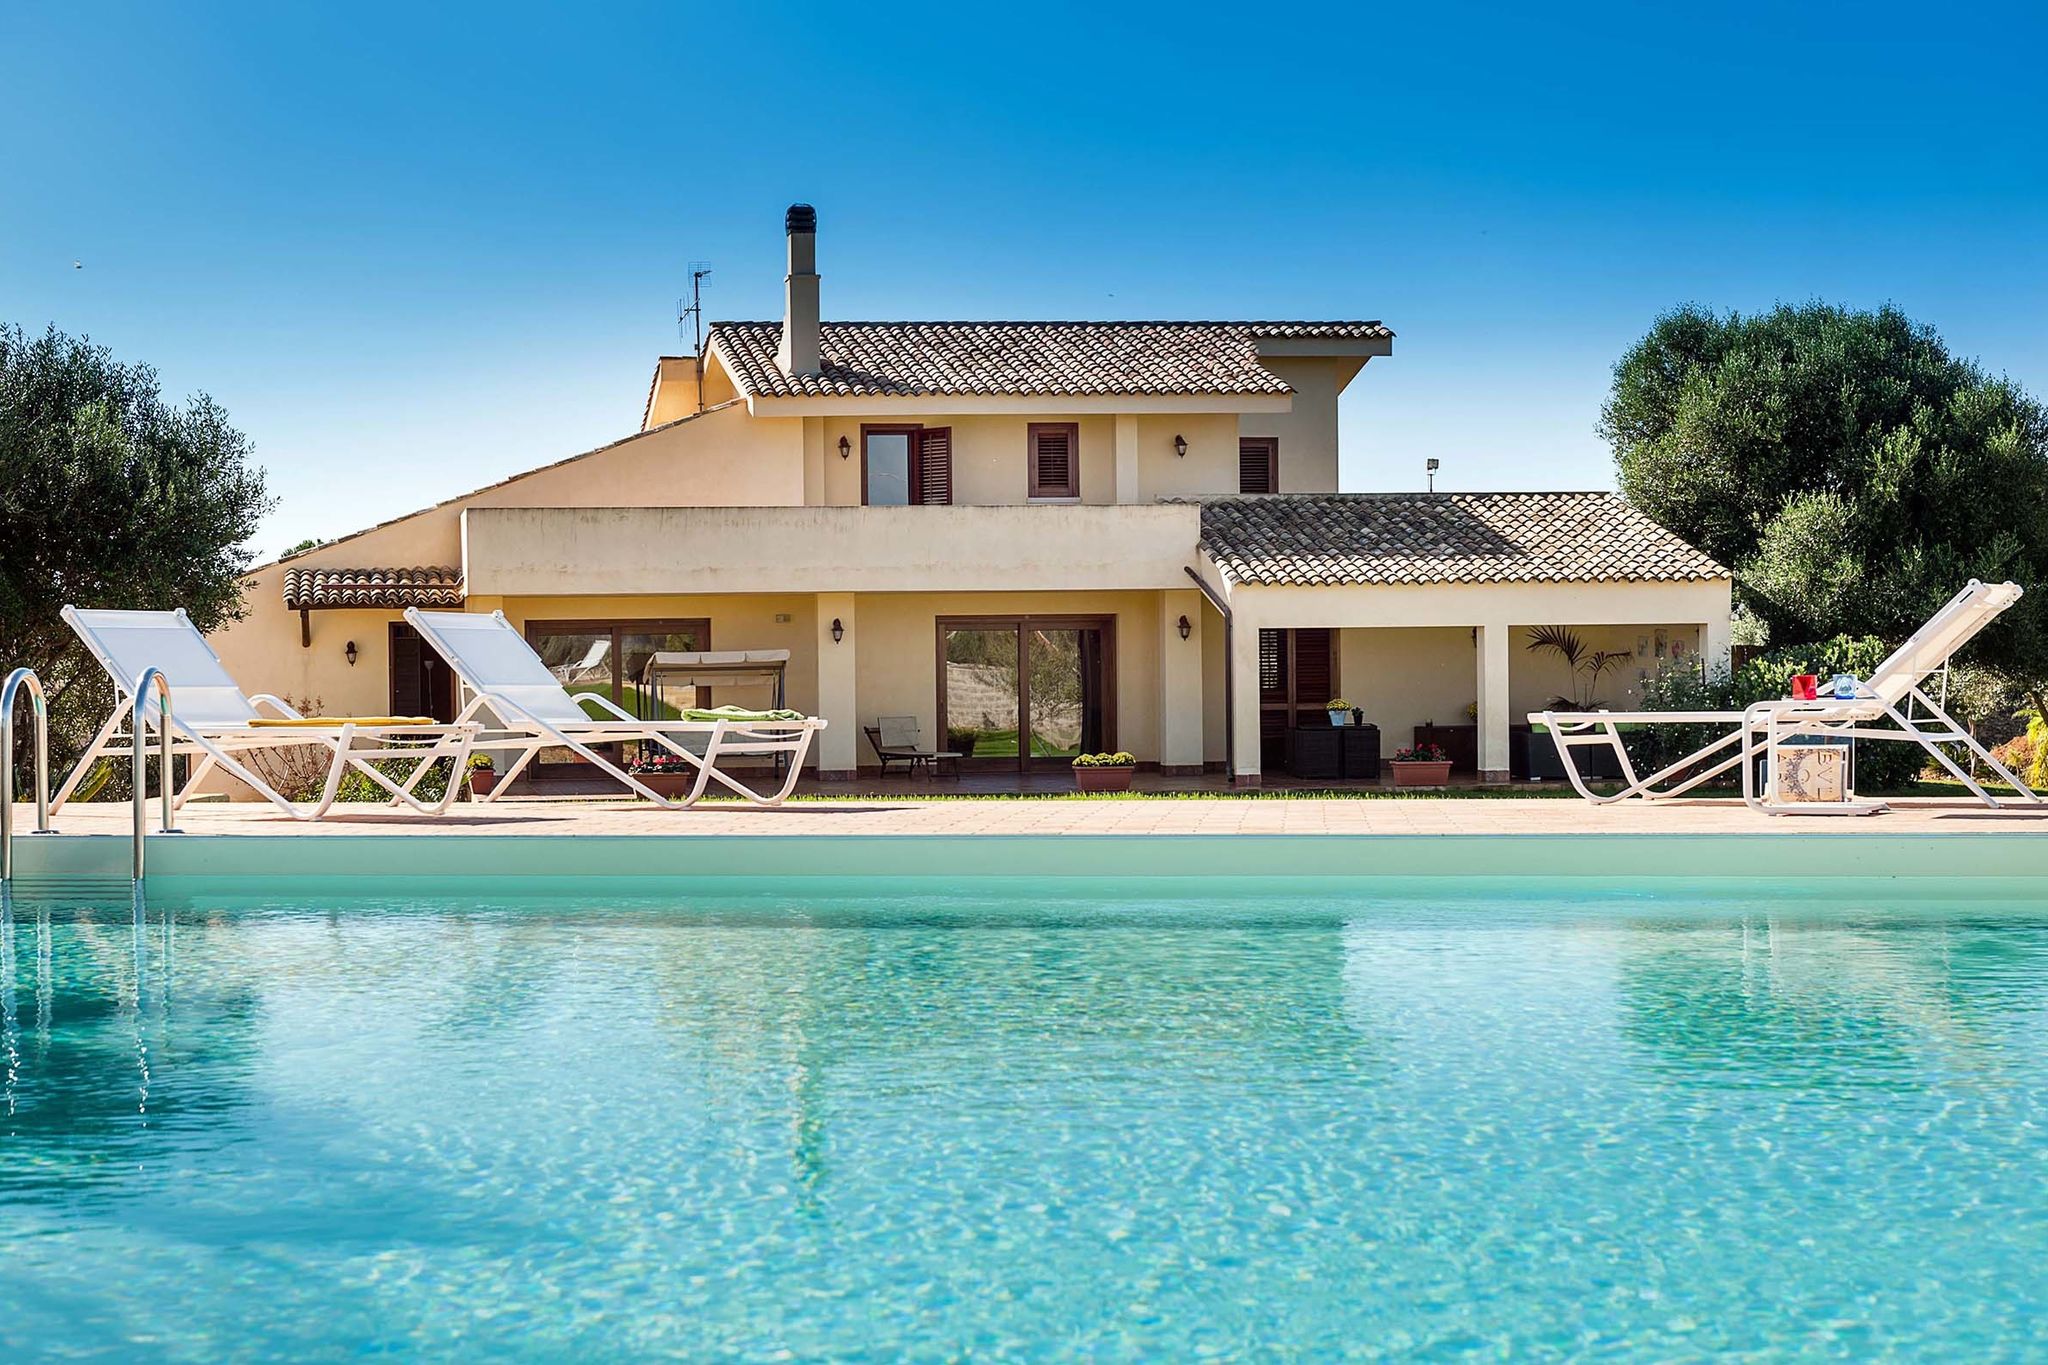 Fraaie villa met zwembad gelegen dichtbij Marsala en op slechts 5 km van zee!